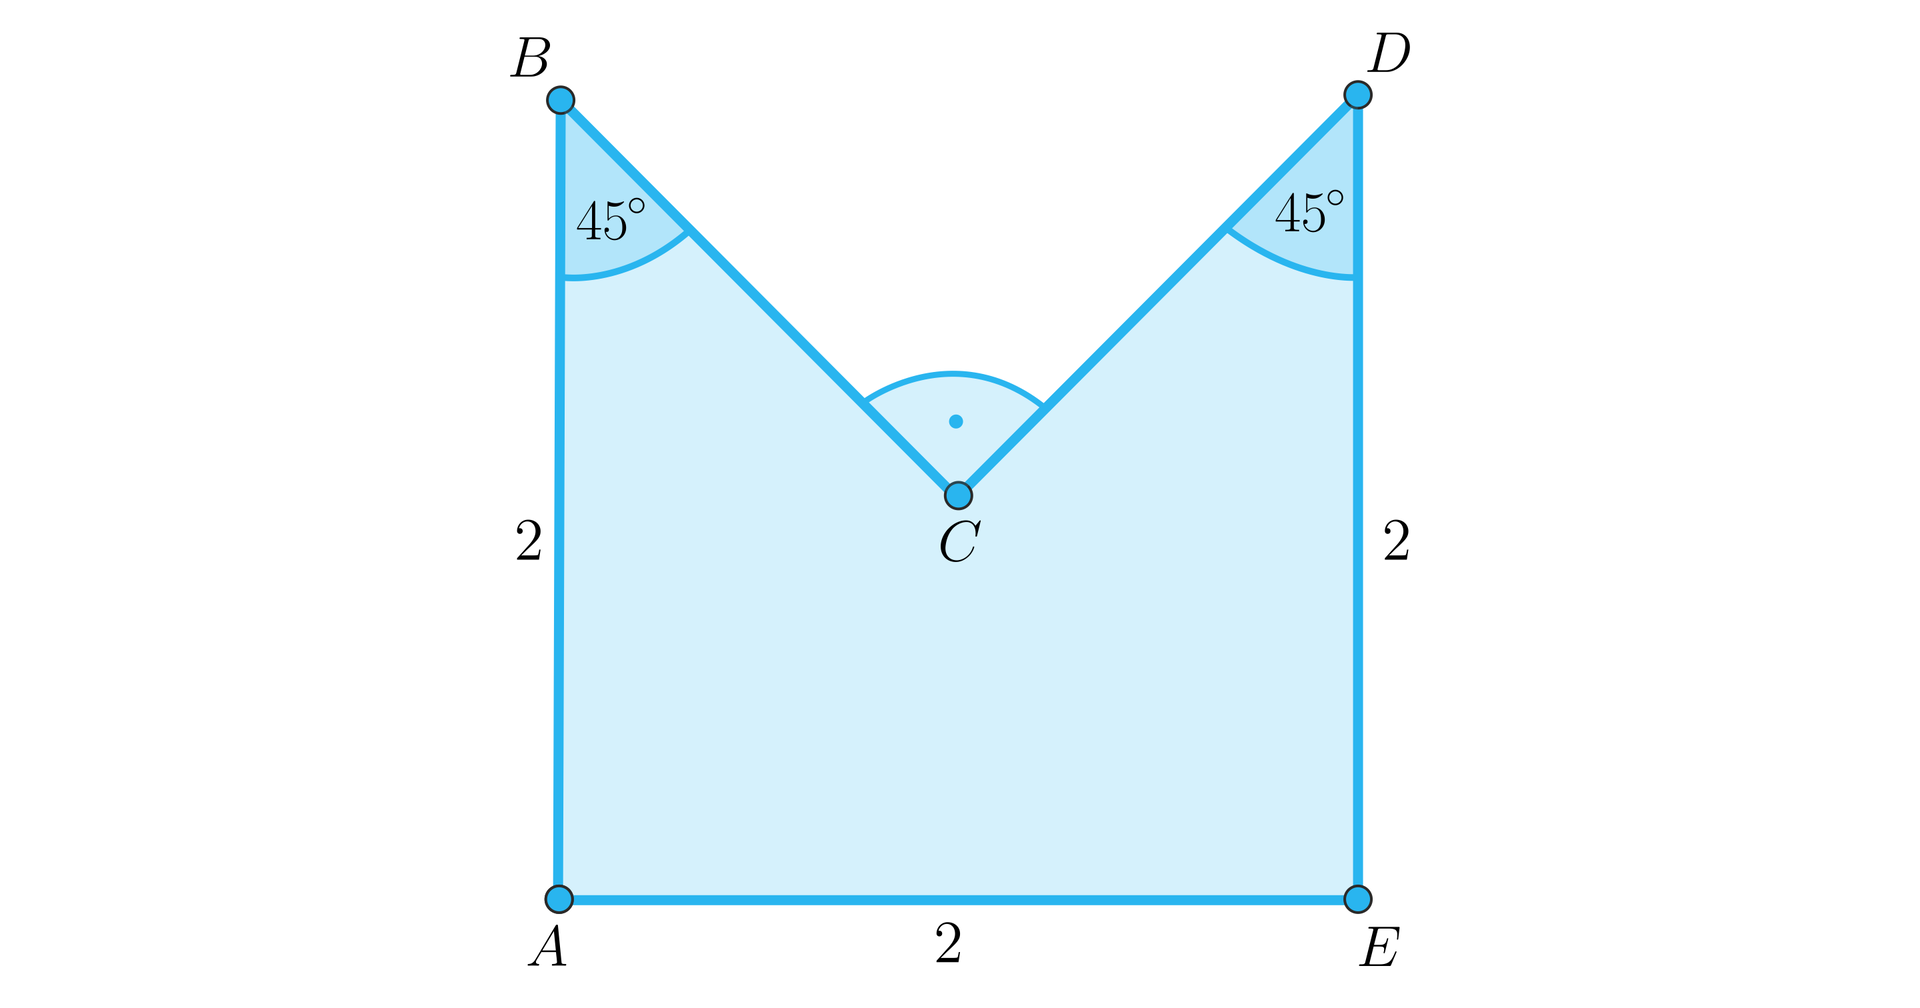 Ilustracja przedstawia figurę A B C D E, która jest kwadratem z wyciętym z góry trójkątem prostokątnym równoramiennym. Boki A B i D E to pionowe boki o długości dwa. Bok A E to pozioma podstawa o długości dwa. W górnej części mamy wyciętą ćwiartkę kwadratu wyznaczoną przez przecinające się przekątne. Ta ćwiartka to trójkąt prostokątny równoramienny B C D. Przy wierzchołku C oznaczono kąt prosty. Kąty A B C oraz C D E mają 45 stopni każdy.